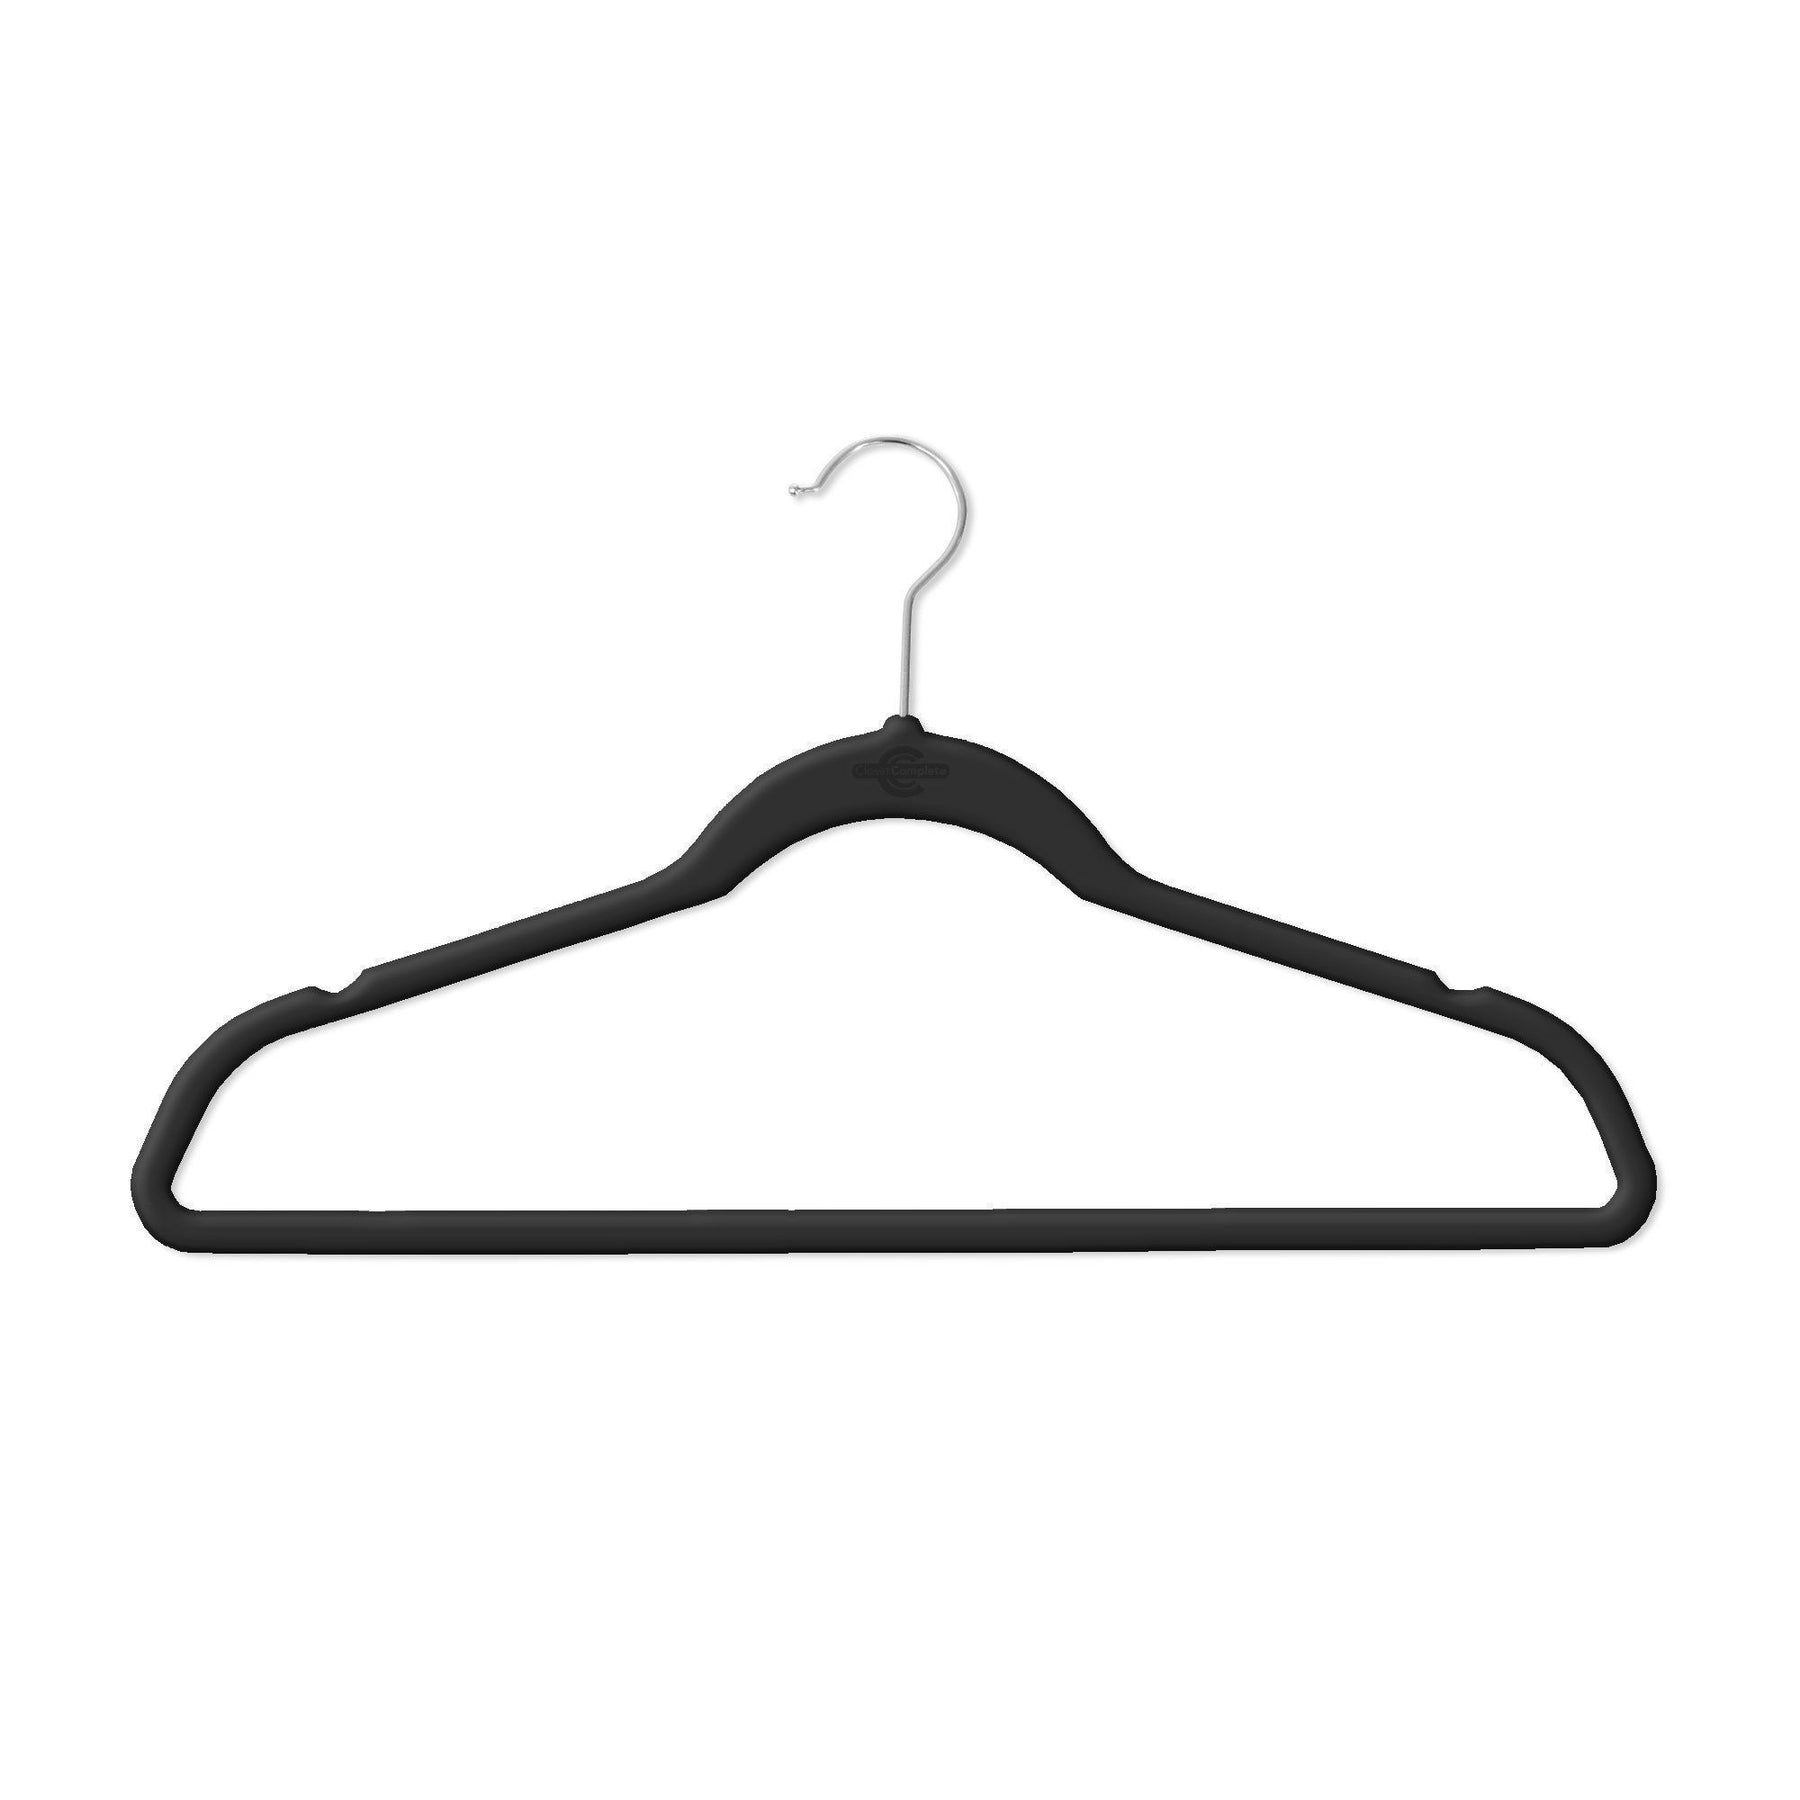 https://cdn.shopify.com/s/files/1/2993/5404/products/closet-complete-velvet-hangers-premium-heavyweight-80g-velvet-suit-hangers-71550-7162566770773_1800x1800.jpg?v=1552520797